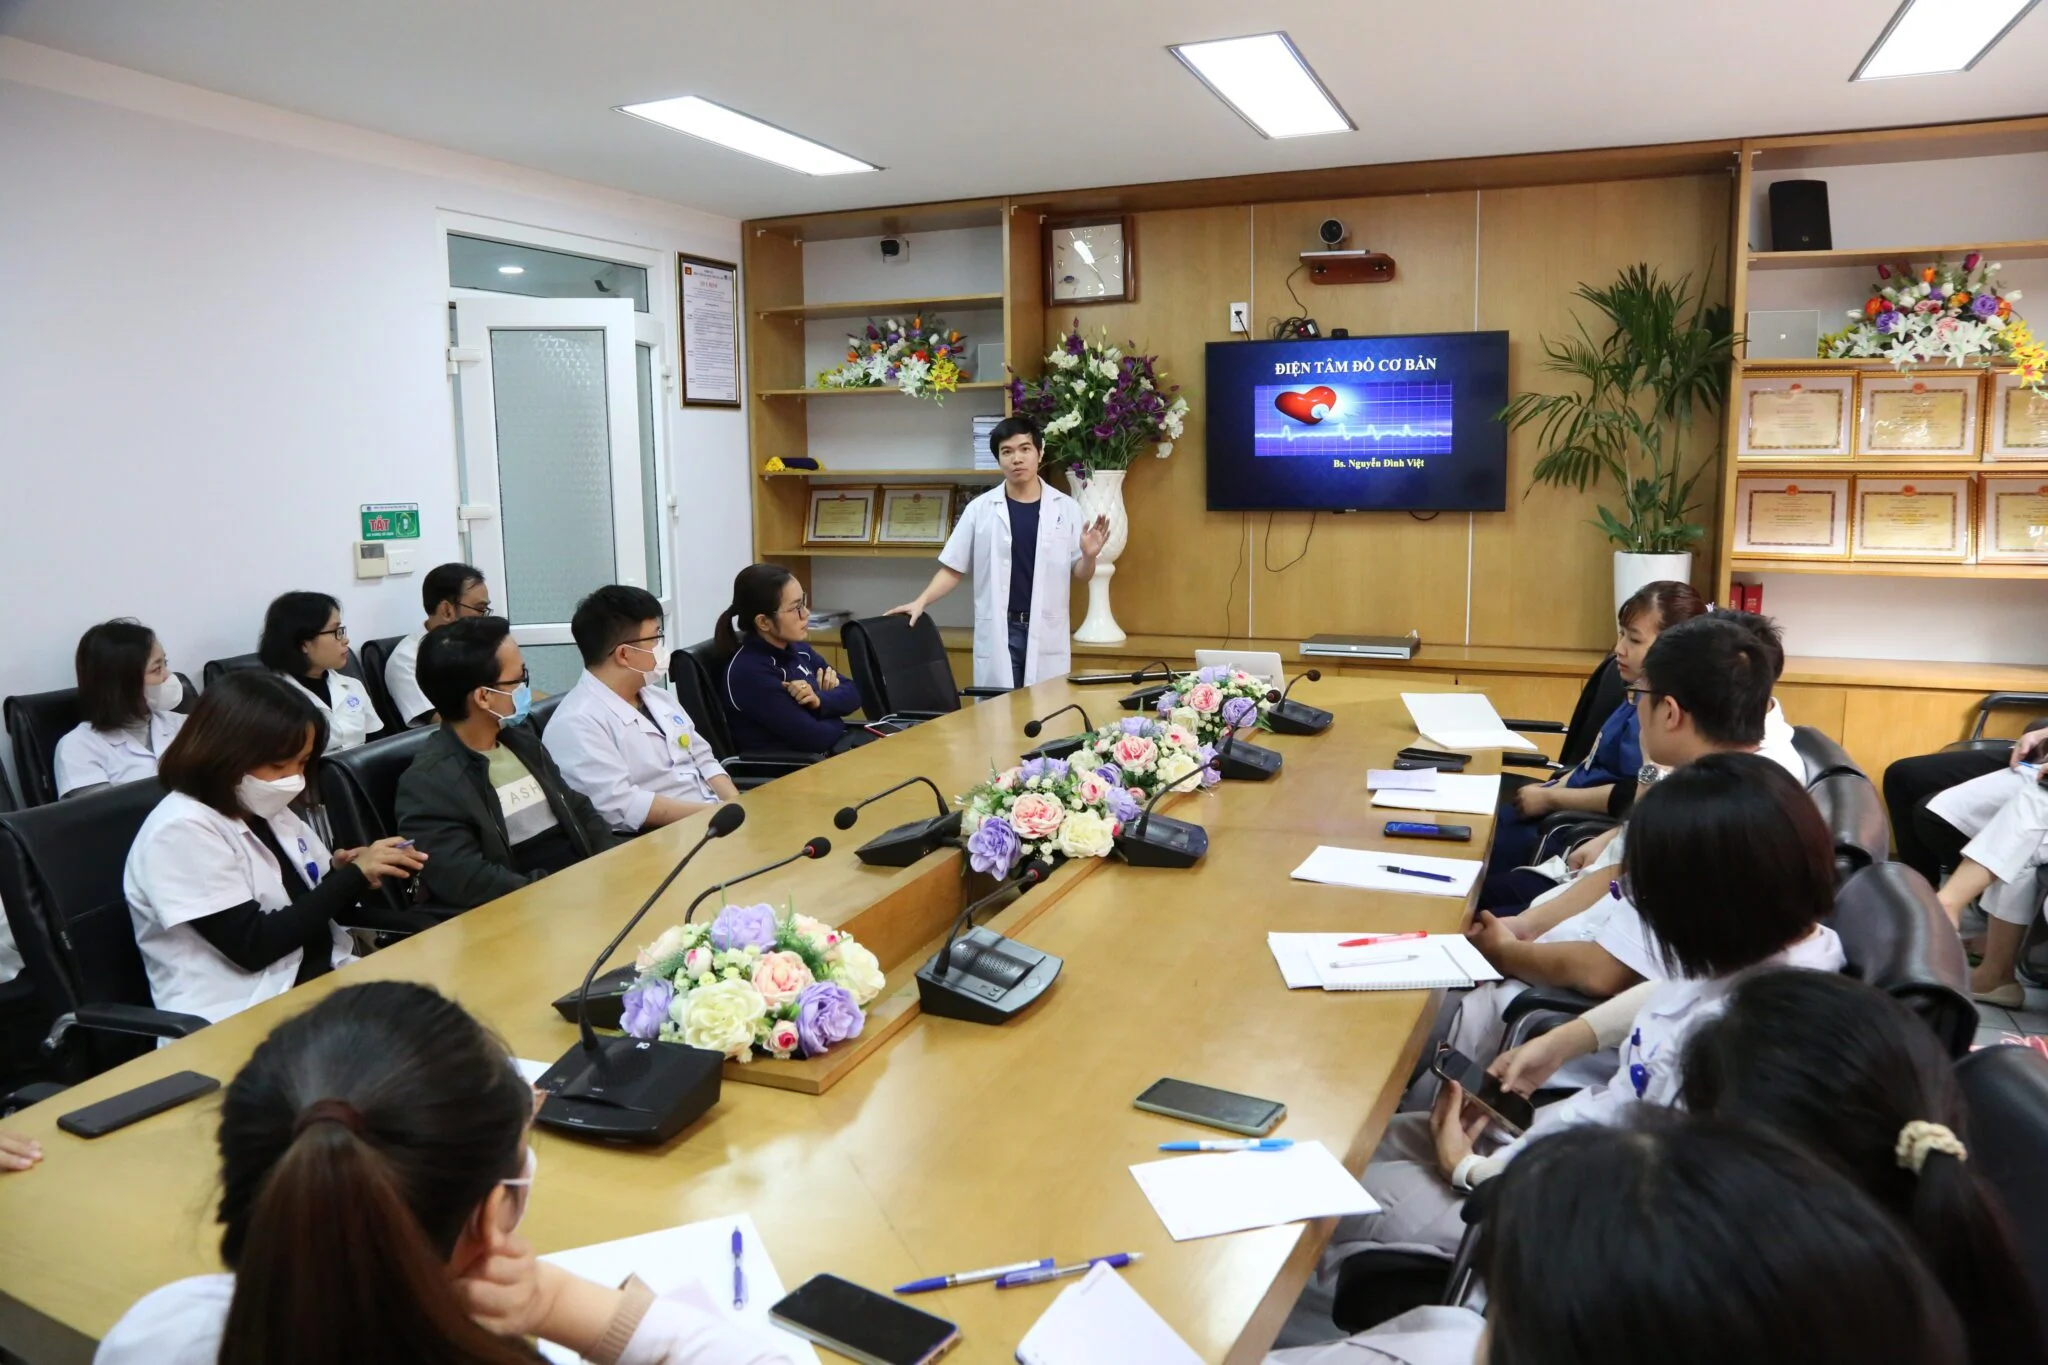 BSCKII Nguyễn Đình Việt giảng viên trong chương trình đào tạo điện tâm đồ cơ bản